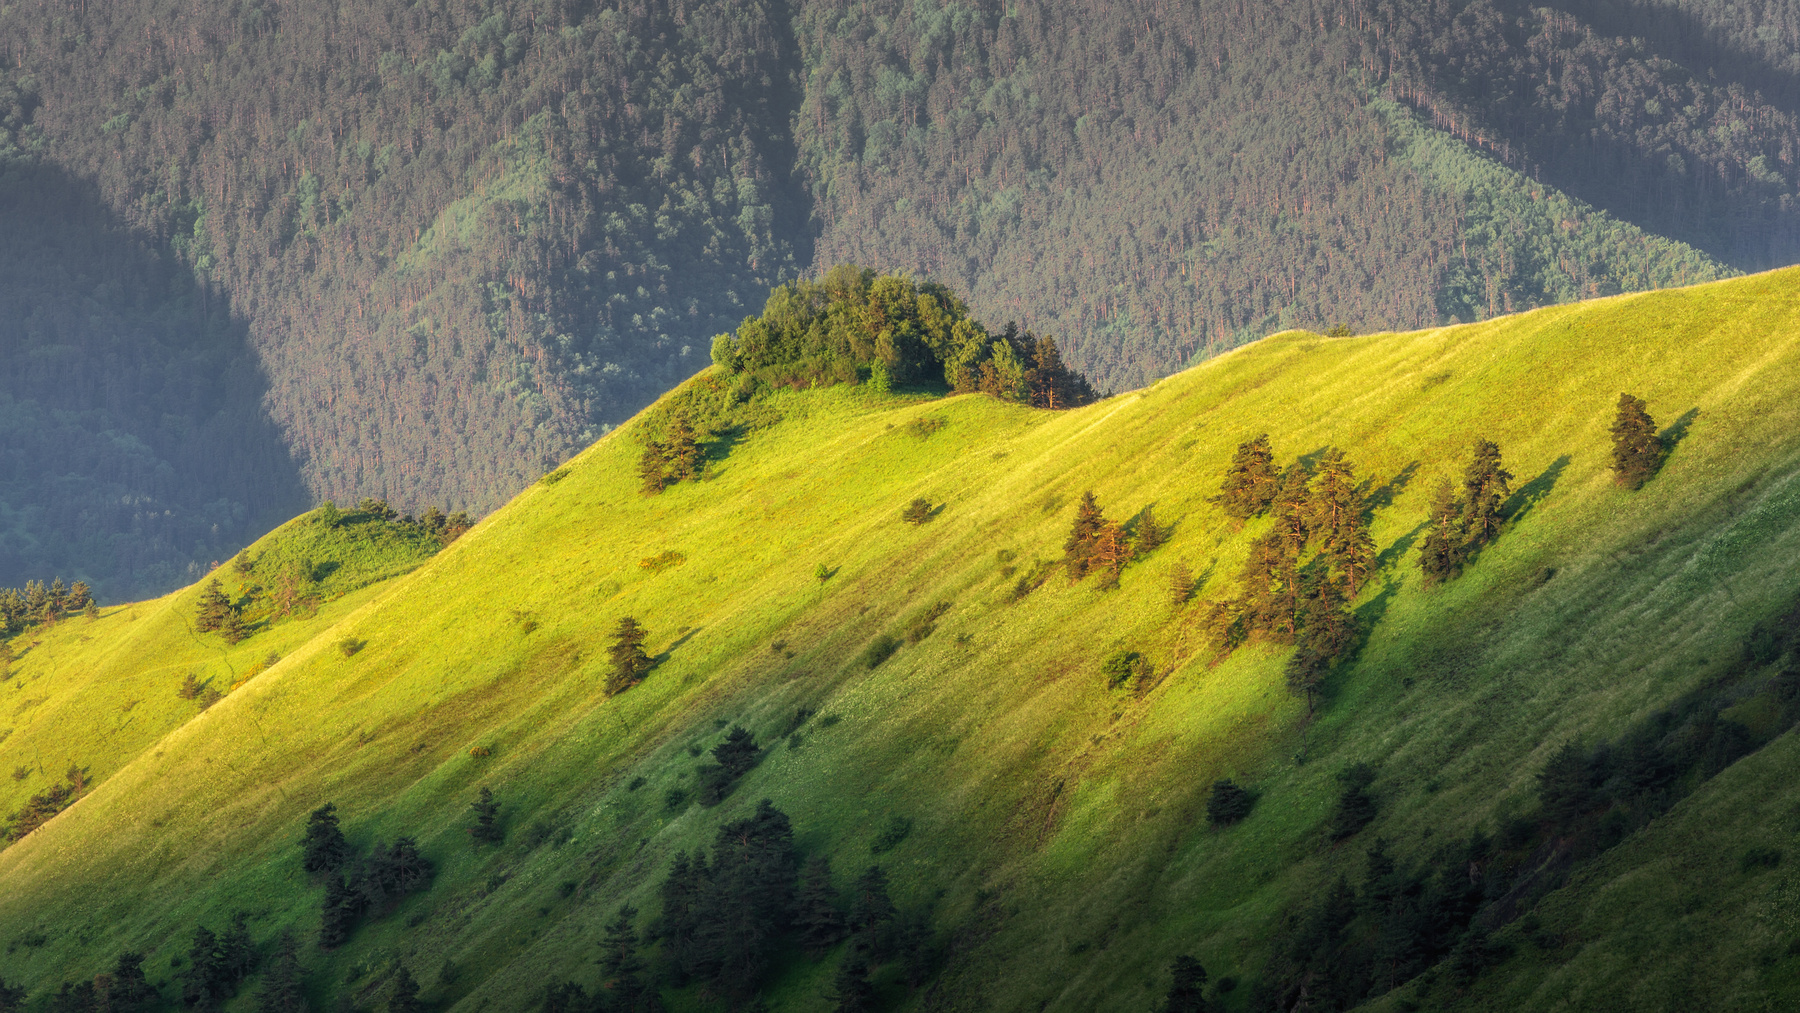 На встречу новому дню рассвет горы склоны Кавказ Россия природа Ингушетия Эрзи солнце деревья свет